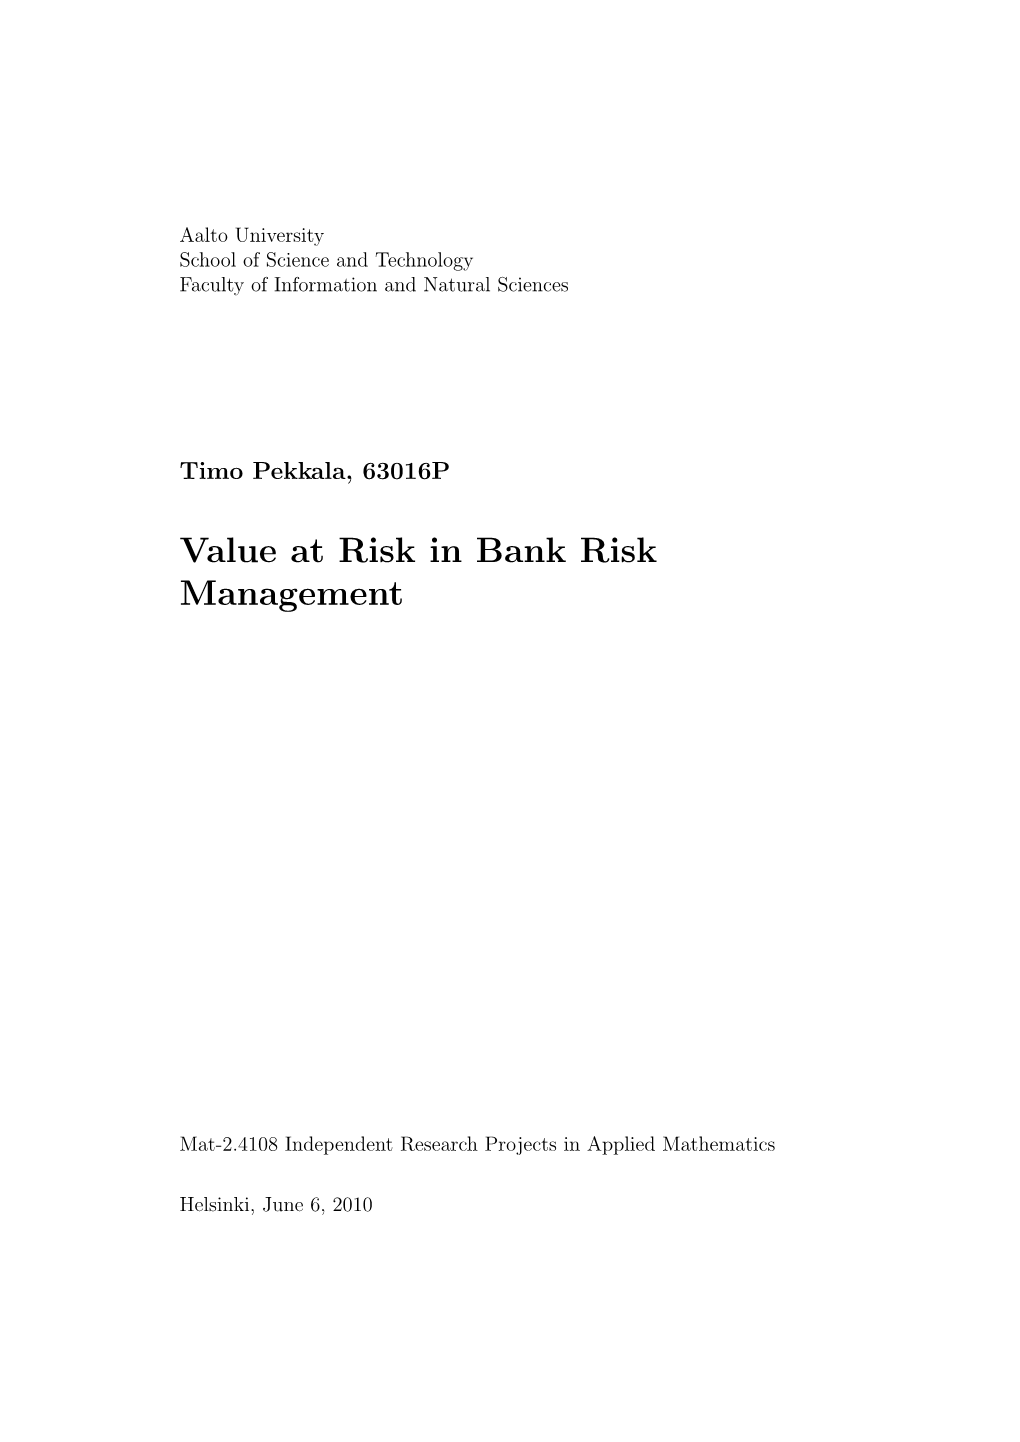 Value at Risk in Bank Risk Management